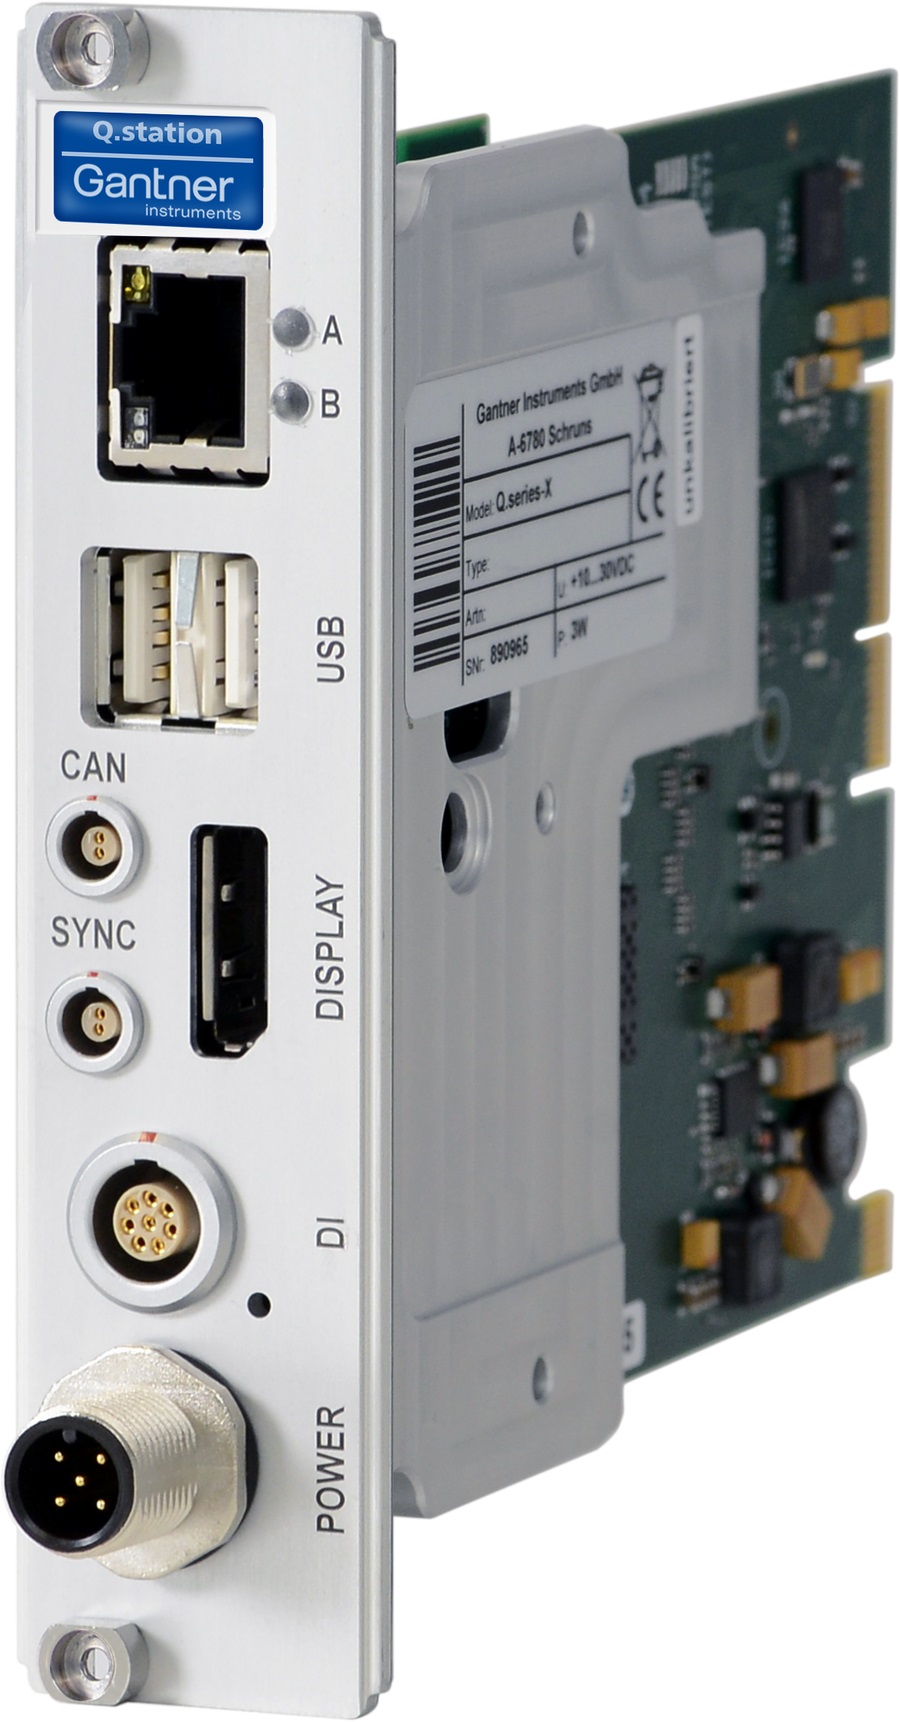 Q.raxx-X-station T - Edge-Controller mit PAC Hochleistung-Datenerfassungsscontroller mit TCP/IP